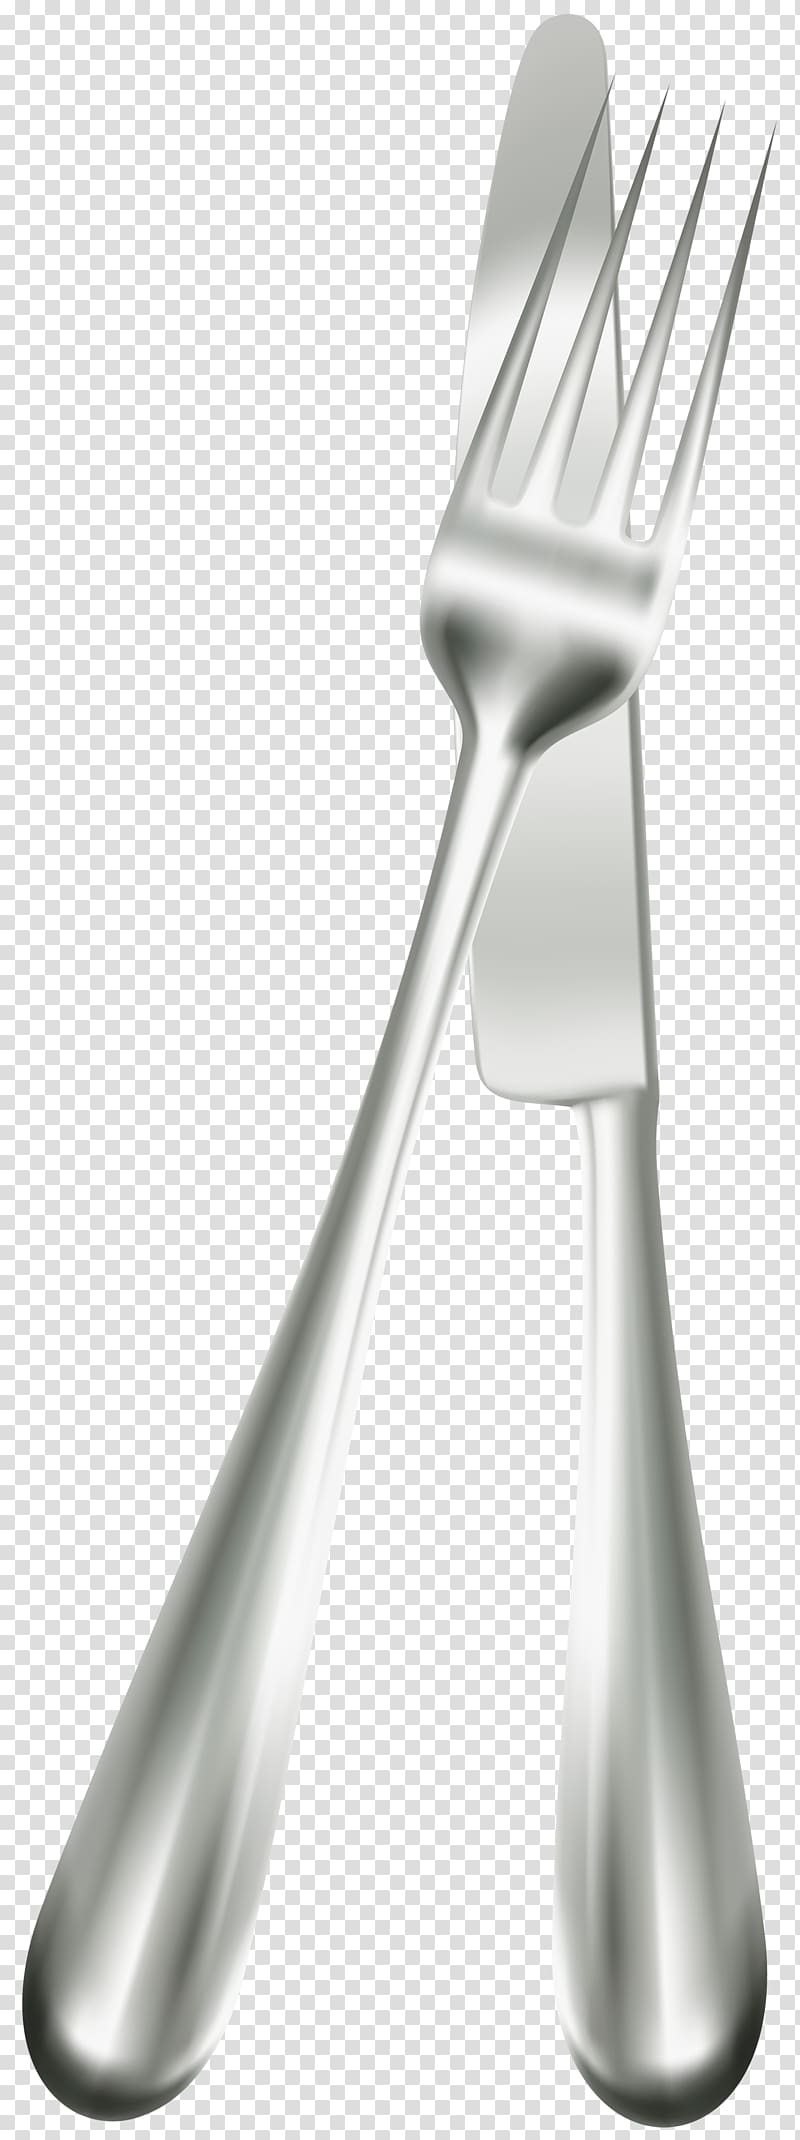 Knife Table Knives Fork , fork transparent background PNG clipart